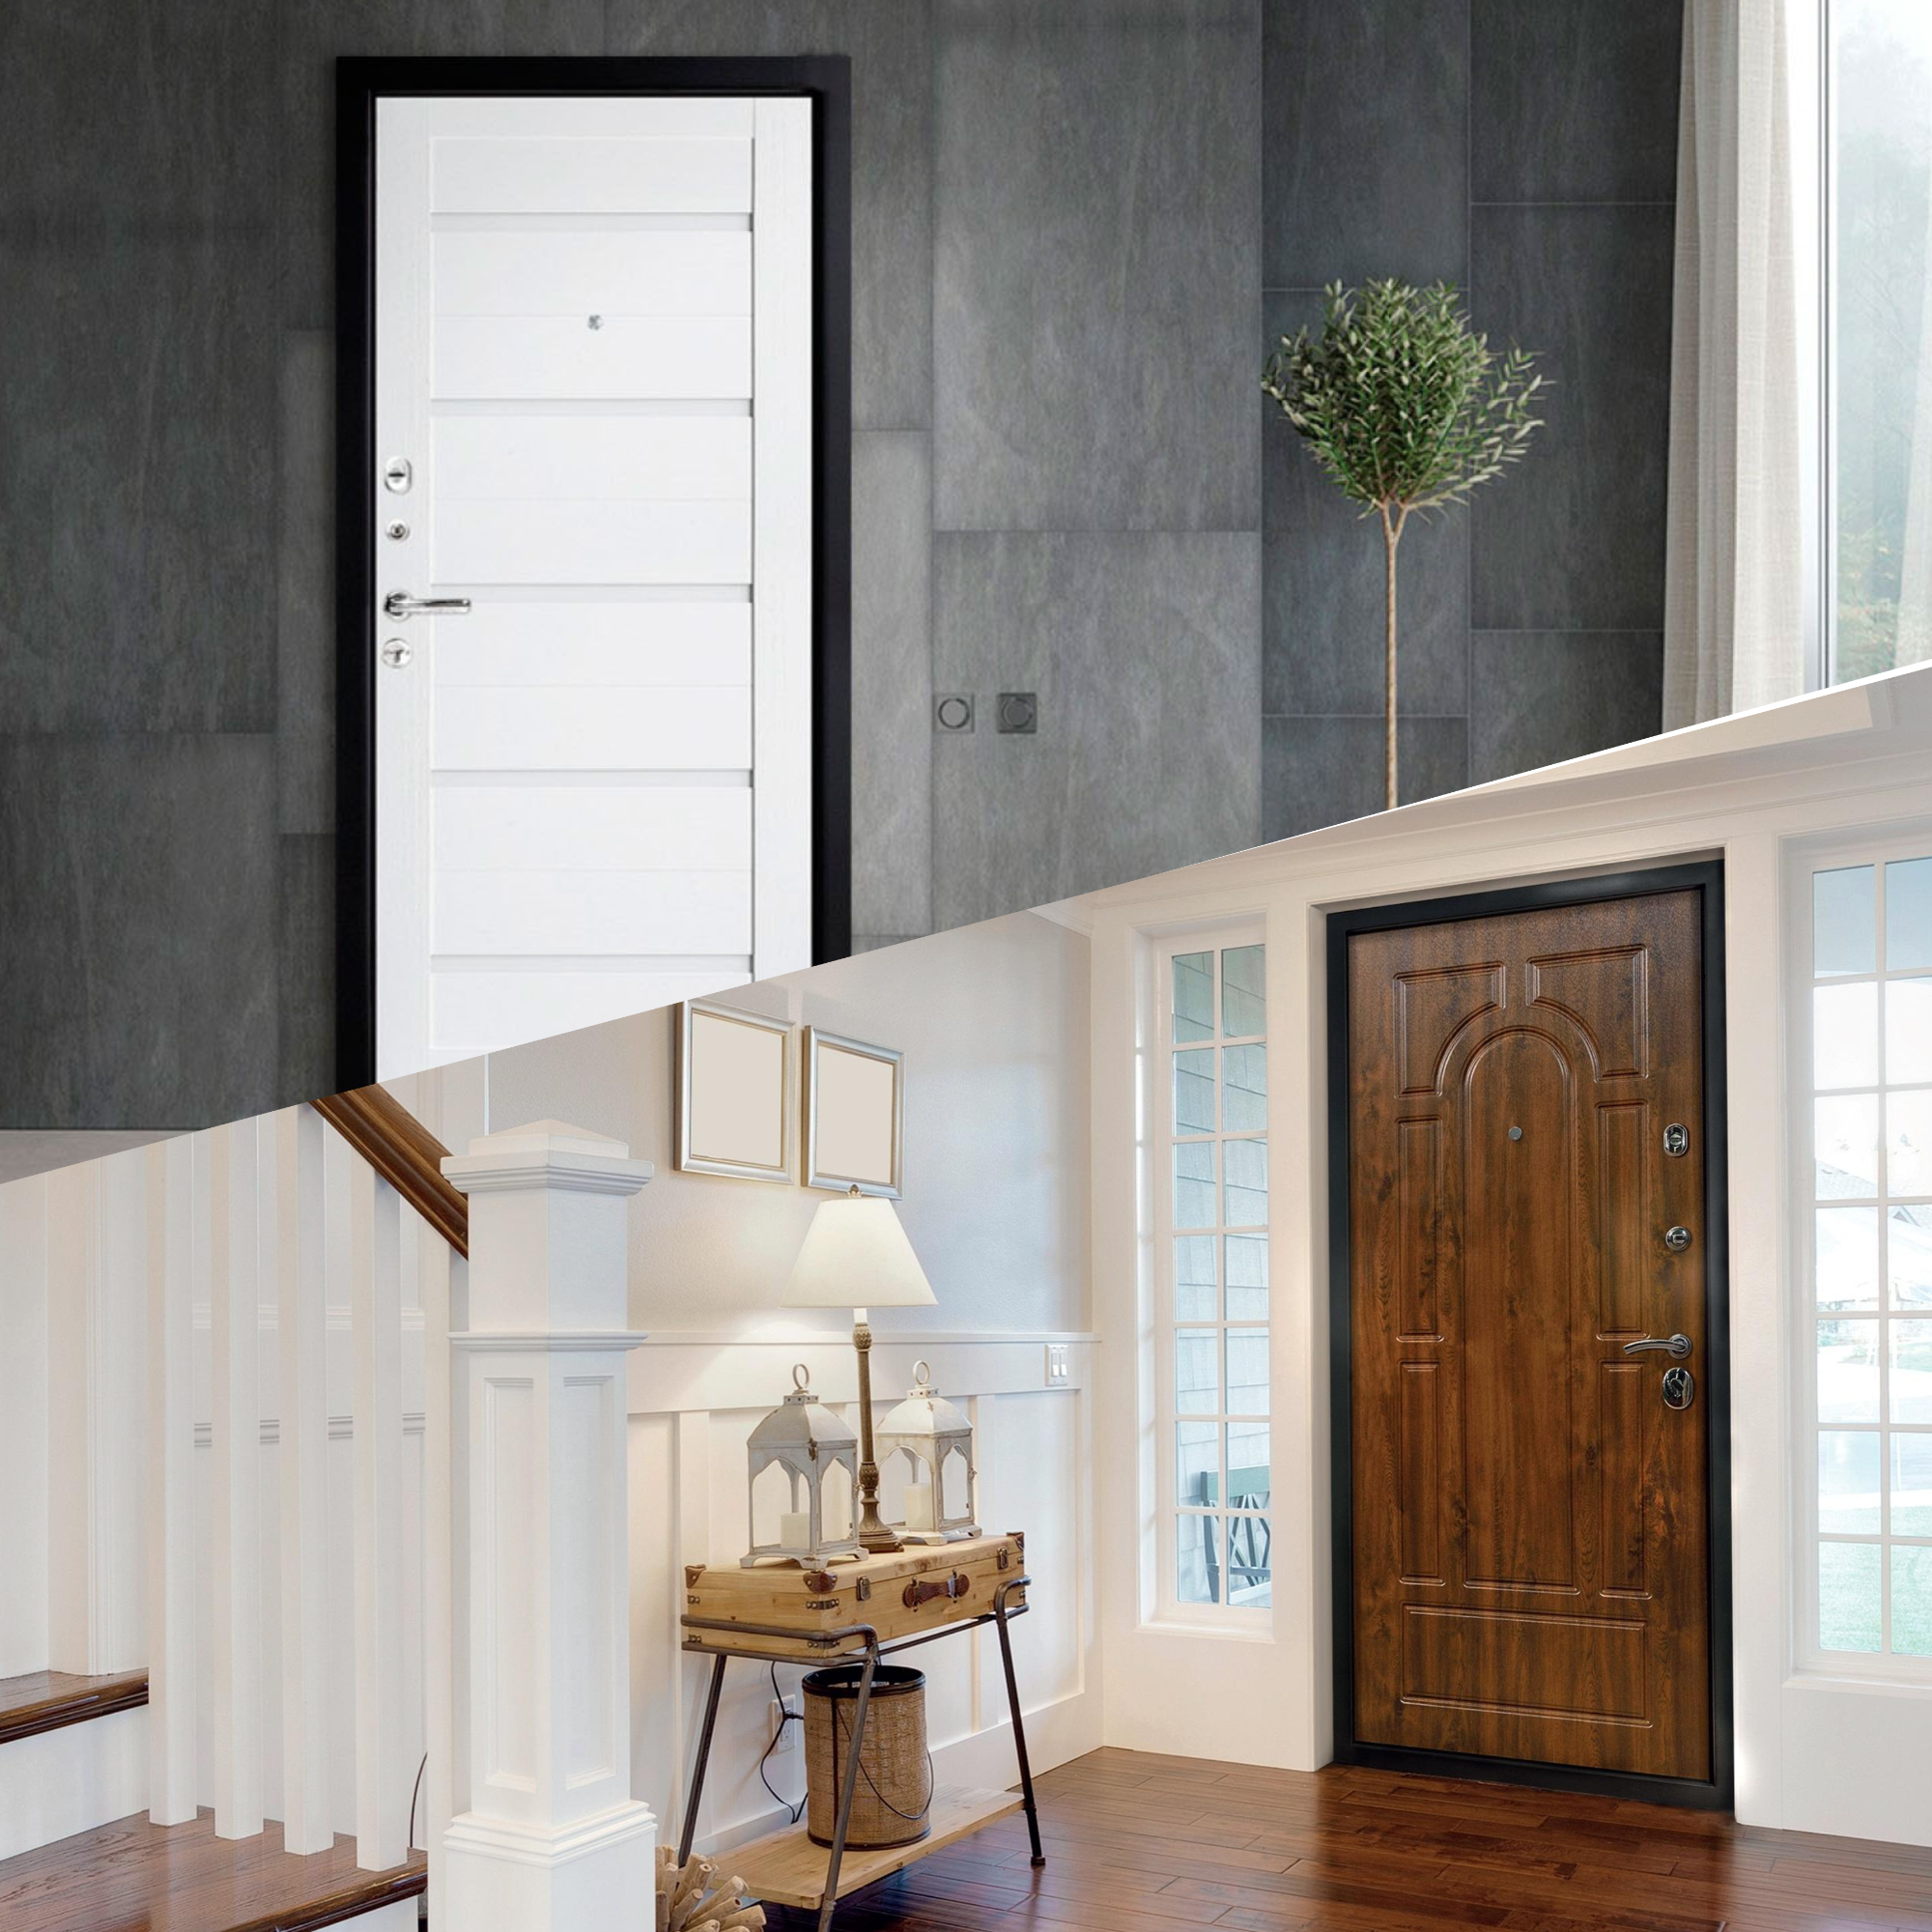 Дизайн межкомнатных дверей в интерьере: топ-5 современных идей для квартиры